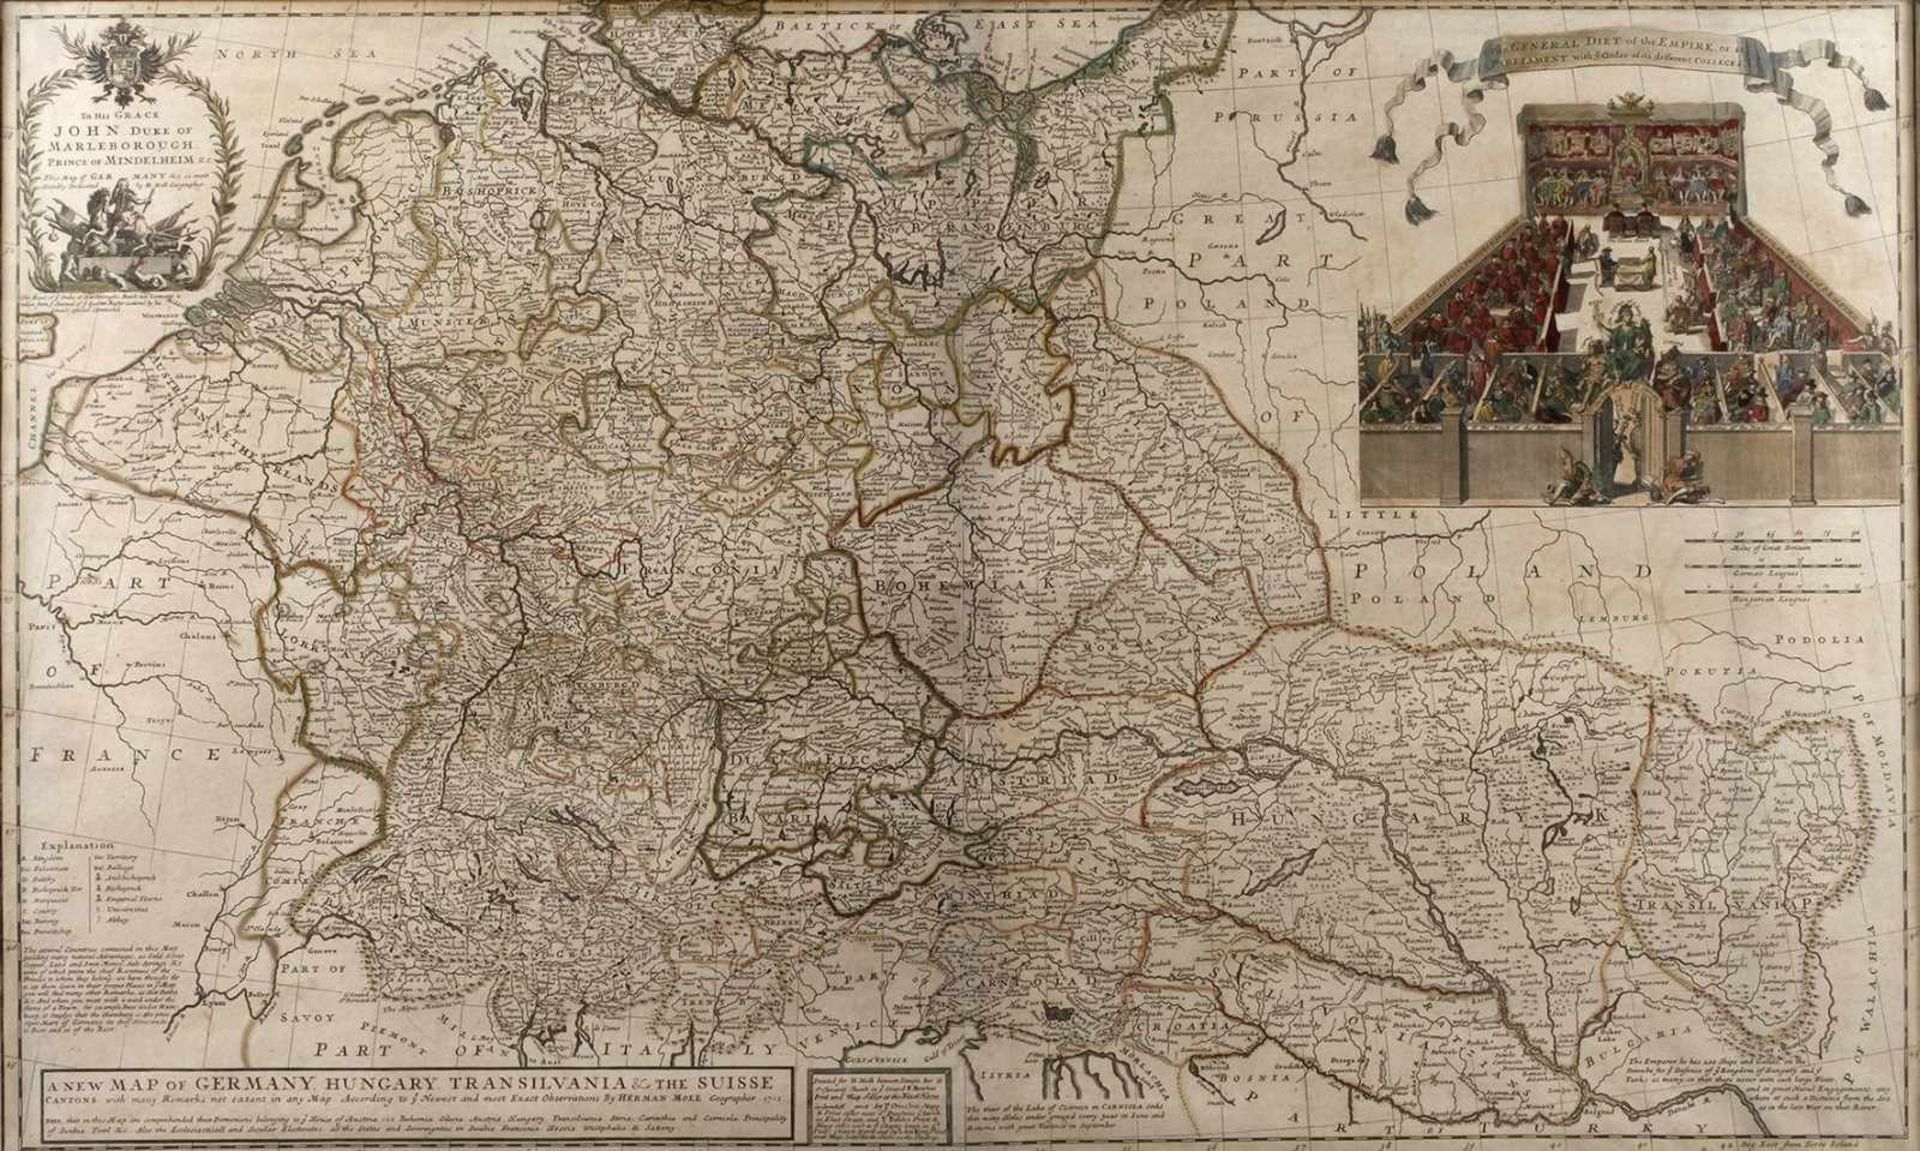 Moll und Bowles, Große Europakarteoben links in Kartusche bezeichnet To his Grace John Duke of